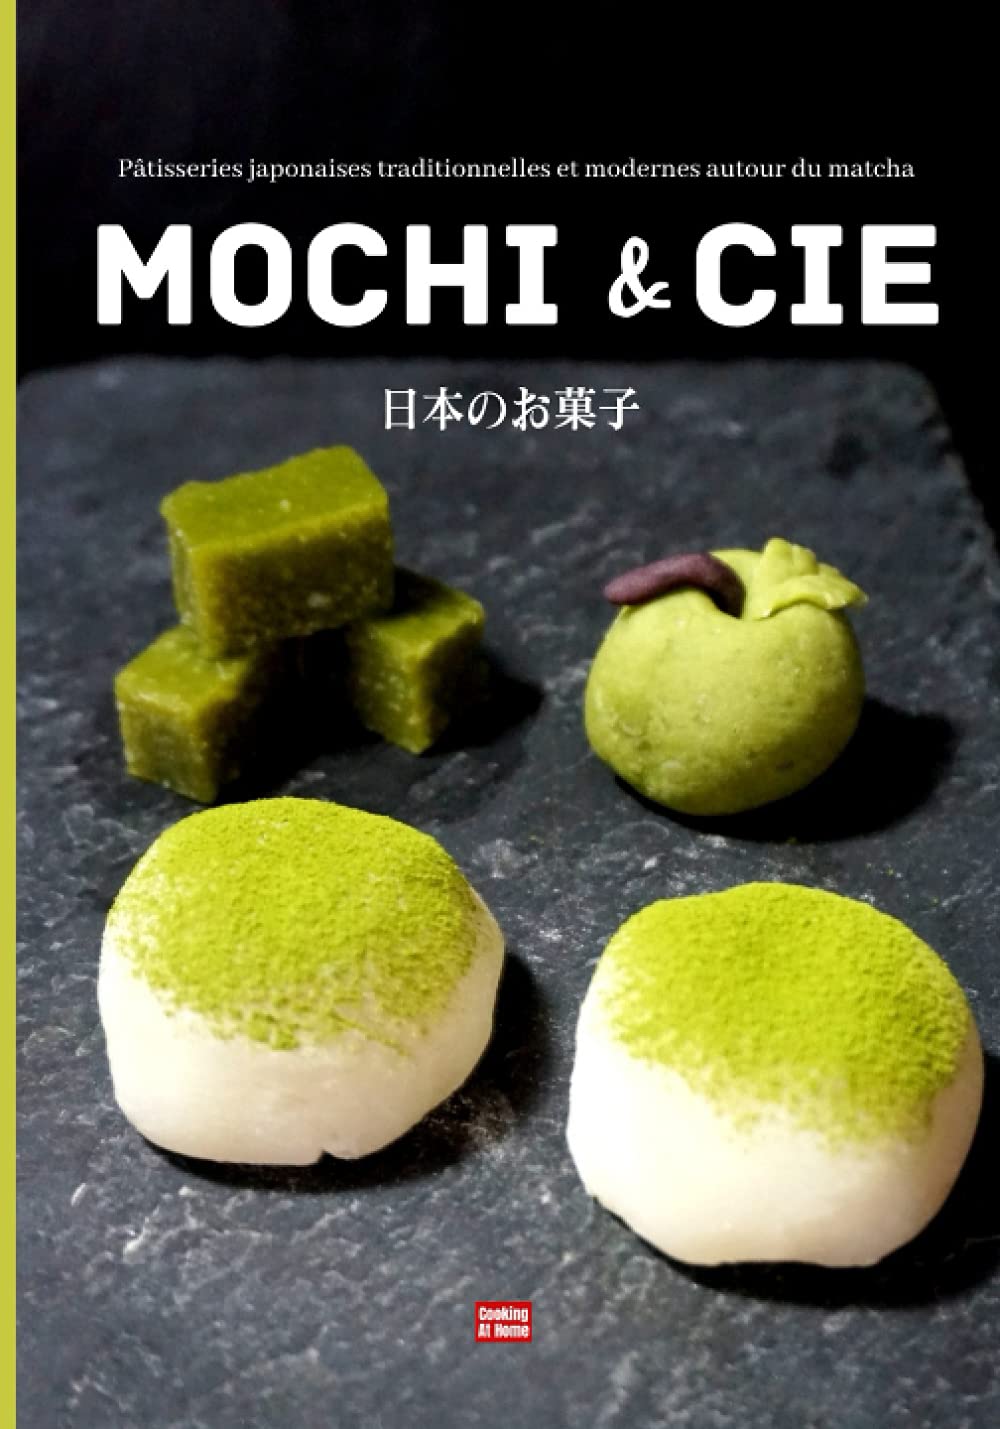 Mochi & Cie: Patisseries Japonaises Traditionnelles et Modernes Autour du Matcha